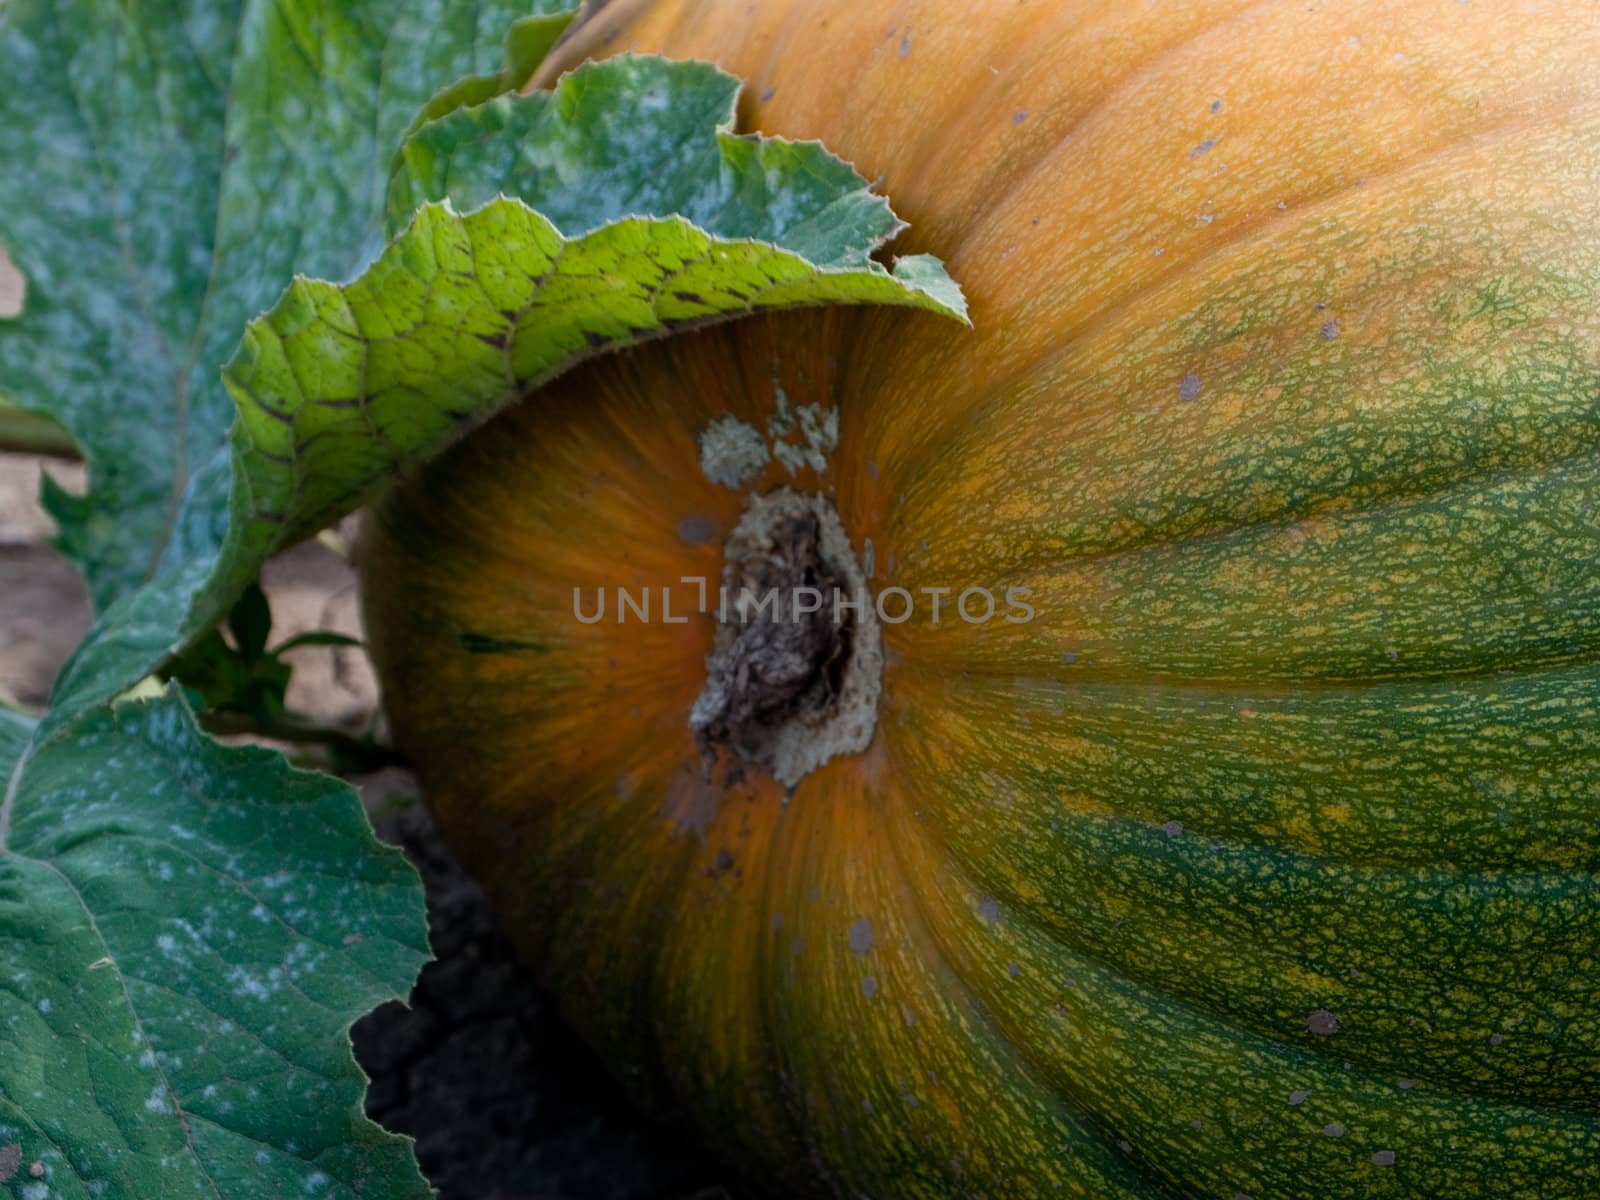 Pumpkin growing in a field by chaosmediamgt